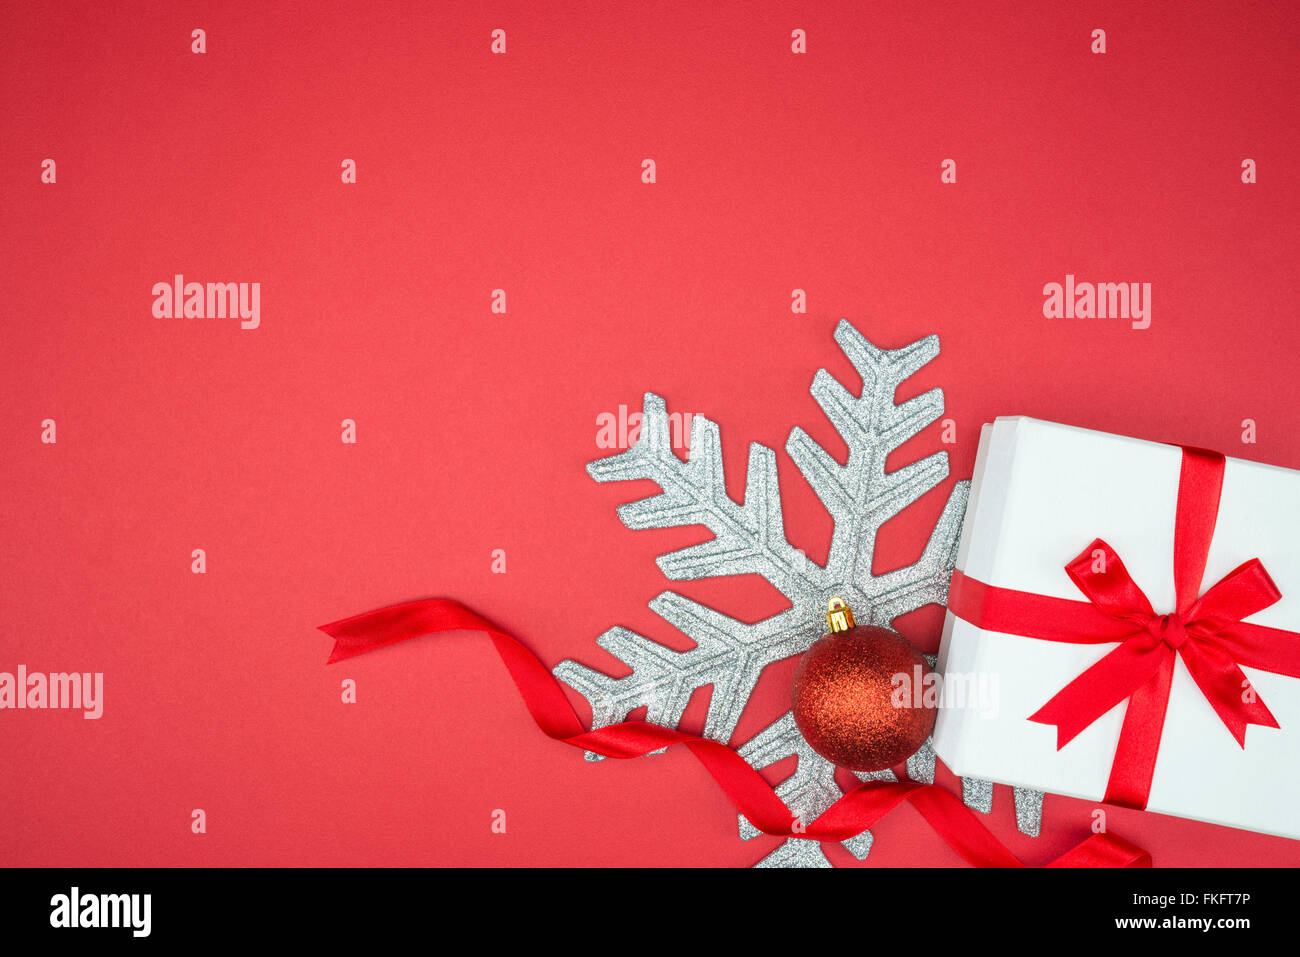 Elegante confezione regalo per le feste evento wrap seta sfera di fiocco di neve su sfondo rosso isolato Foto Stock